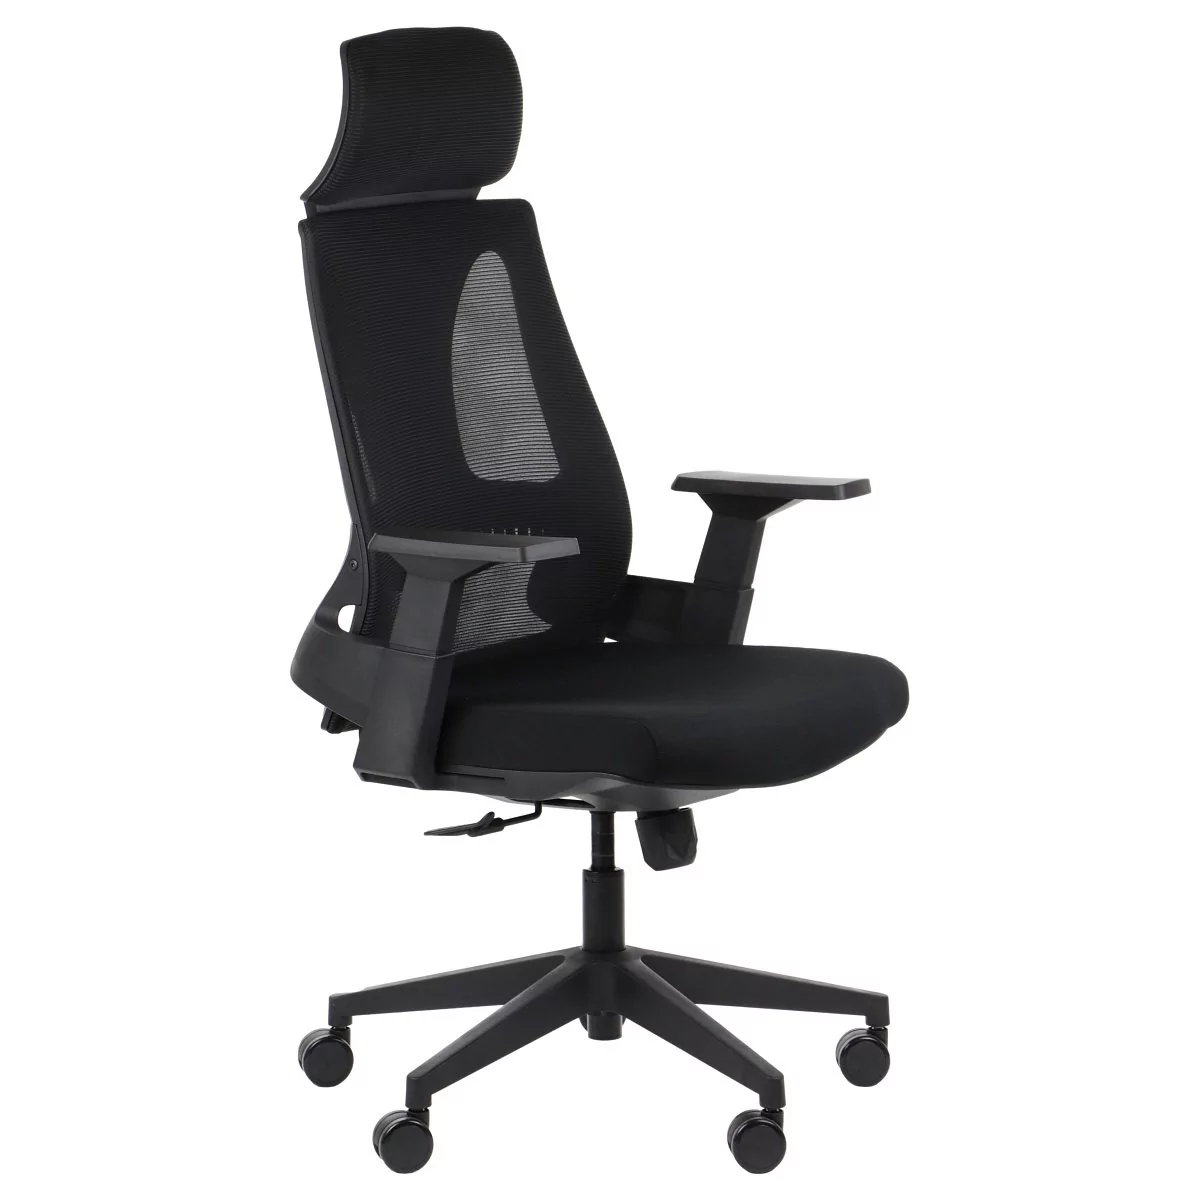 Stema SR Fotel biurowy obrotowy OLTON H CZARNY - zagłówek, oparcie siatkowe - krzesło obrotowe, biurowe olton/h/czarny